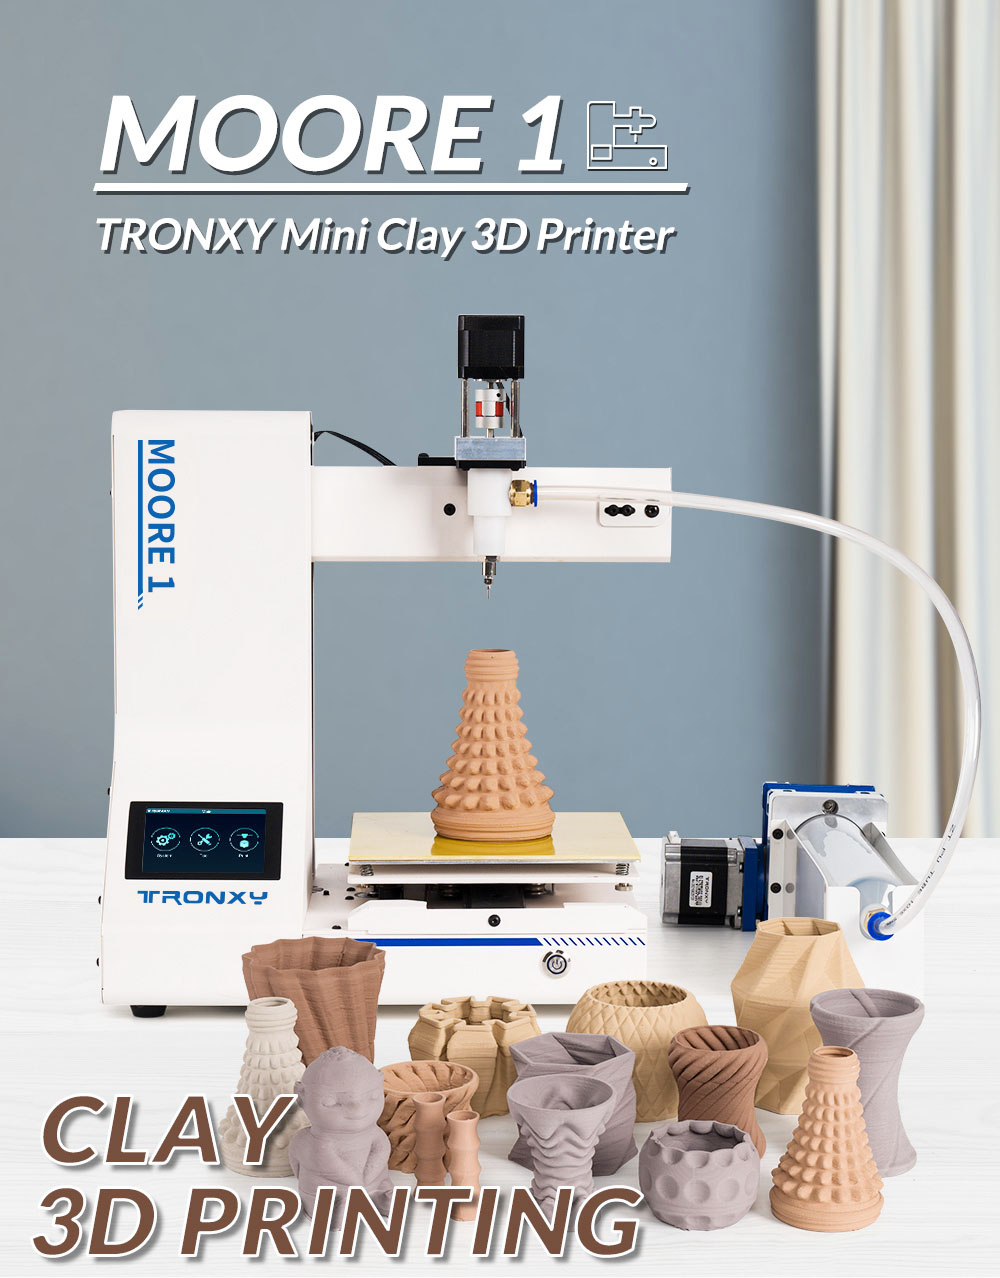 Tronxy Moore 1ミニクレイ3Dプリンター、40mm / s印刷速度、レジューム印刷、TMC2209、180 * 180 * 180mm